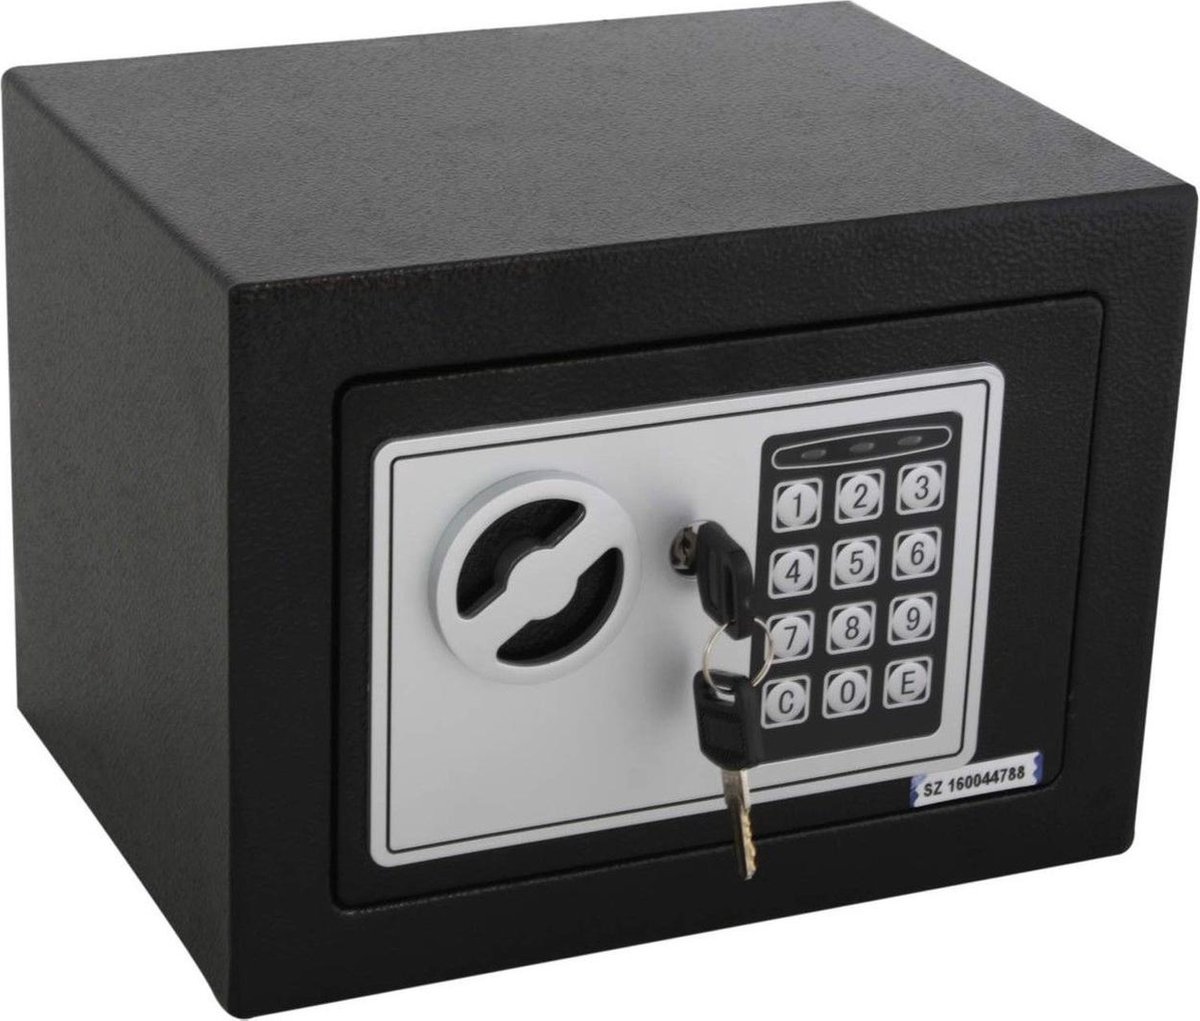 Kynast Tresor Digitale kluis - zwart - met elektrisch cijferslot